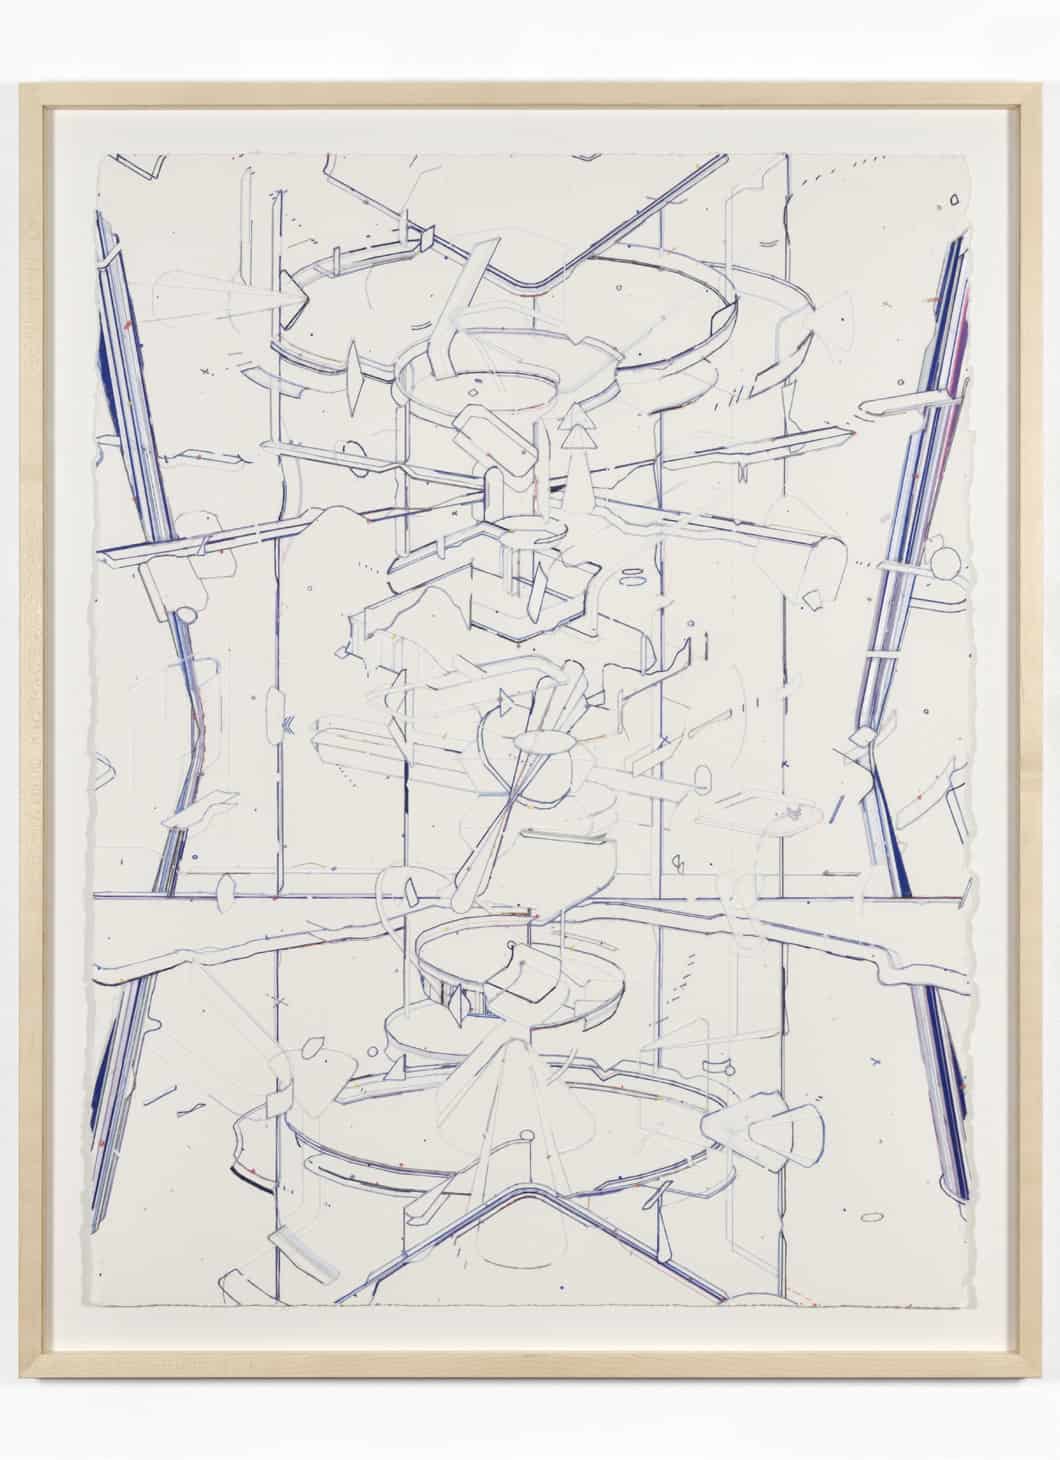 Keita Mori, « Bug report (Booster) » BR_19_11_29, 2019, fil de coton, de soie et de cuivre sur papier, 76 x 56 cm © Courtesy de l’artiste et de la galerie Catherine Putman